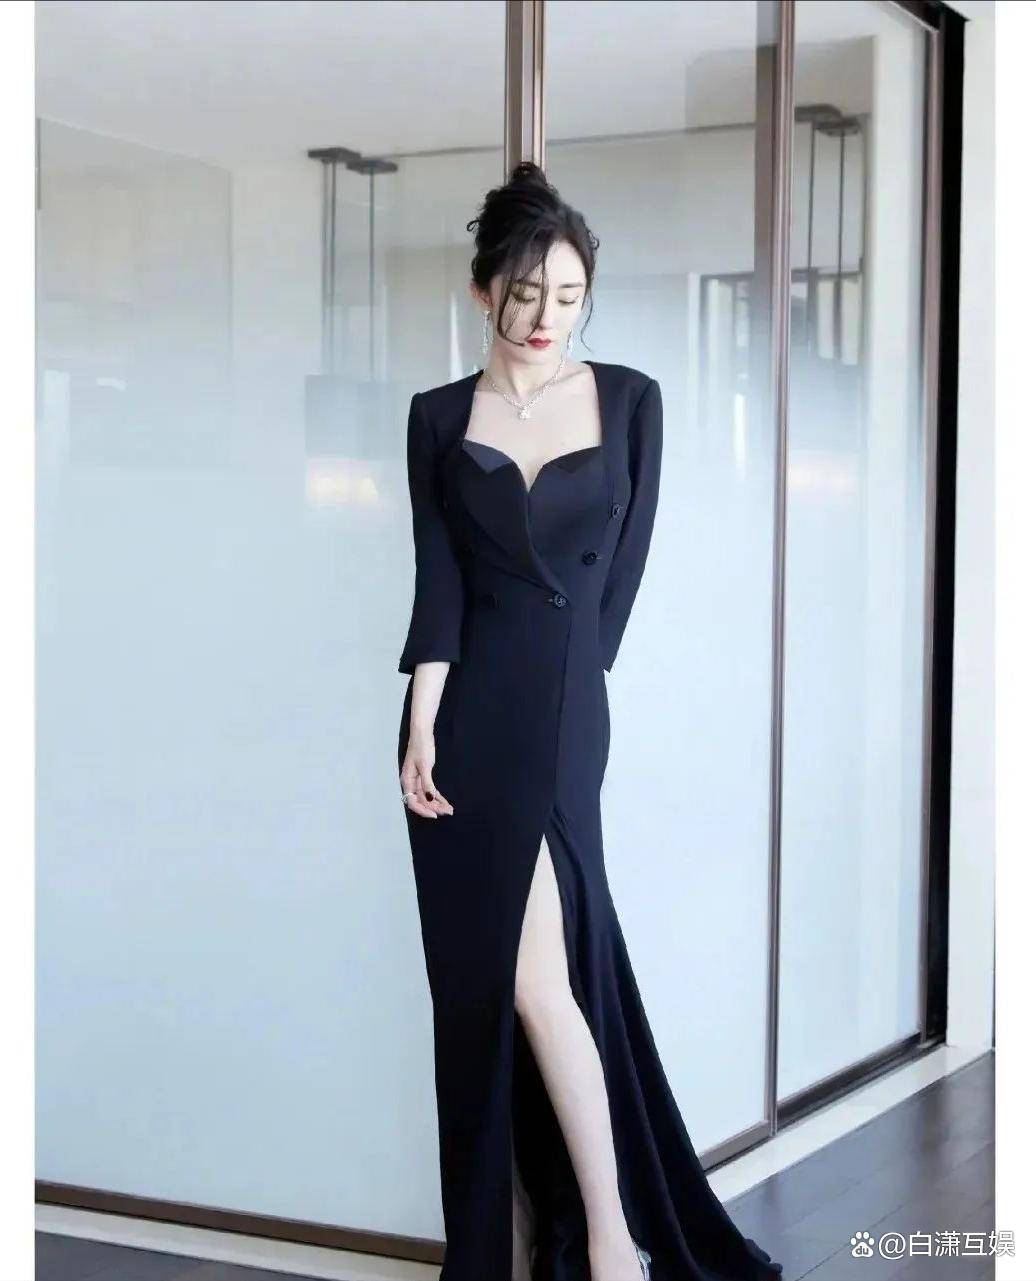 近日,中国影视界的风云人物杨幂以一身抹胸黑裙亮相活动,引起了广大